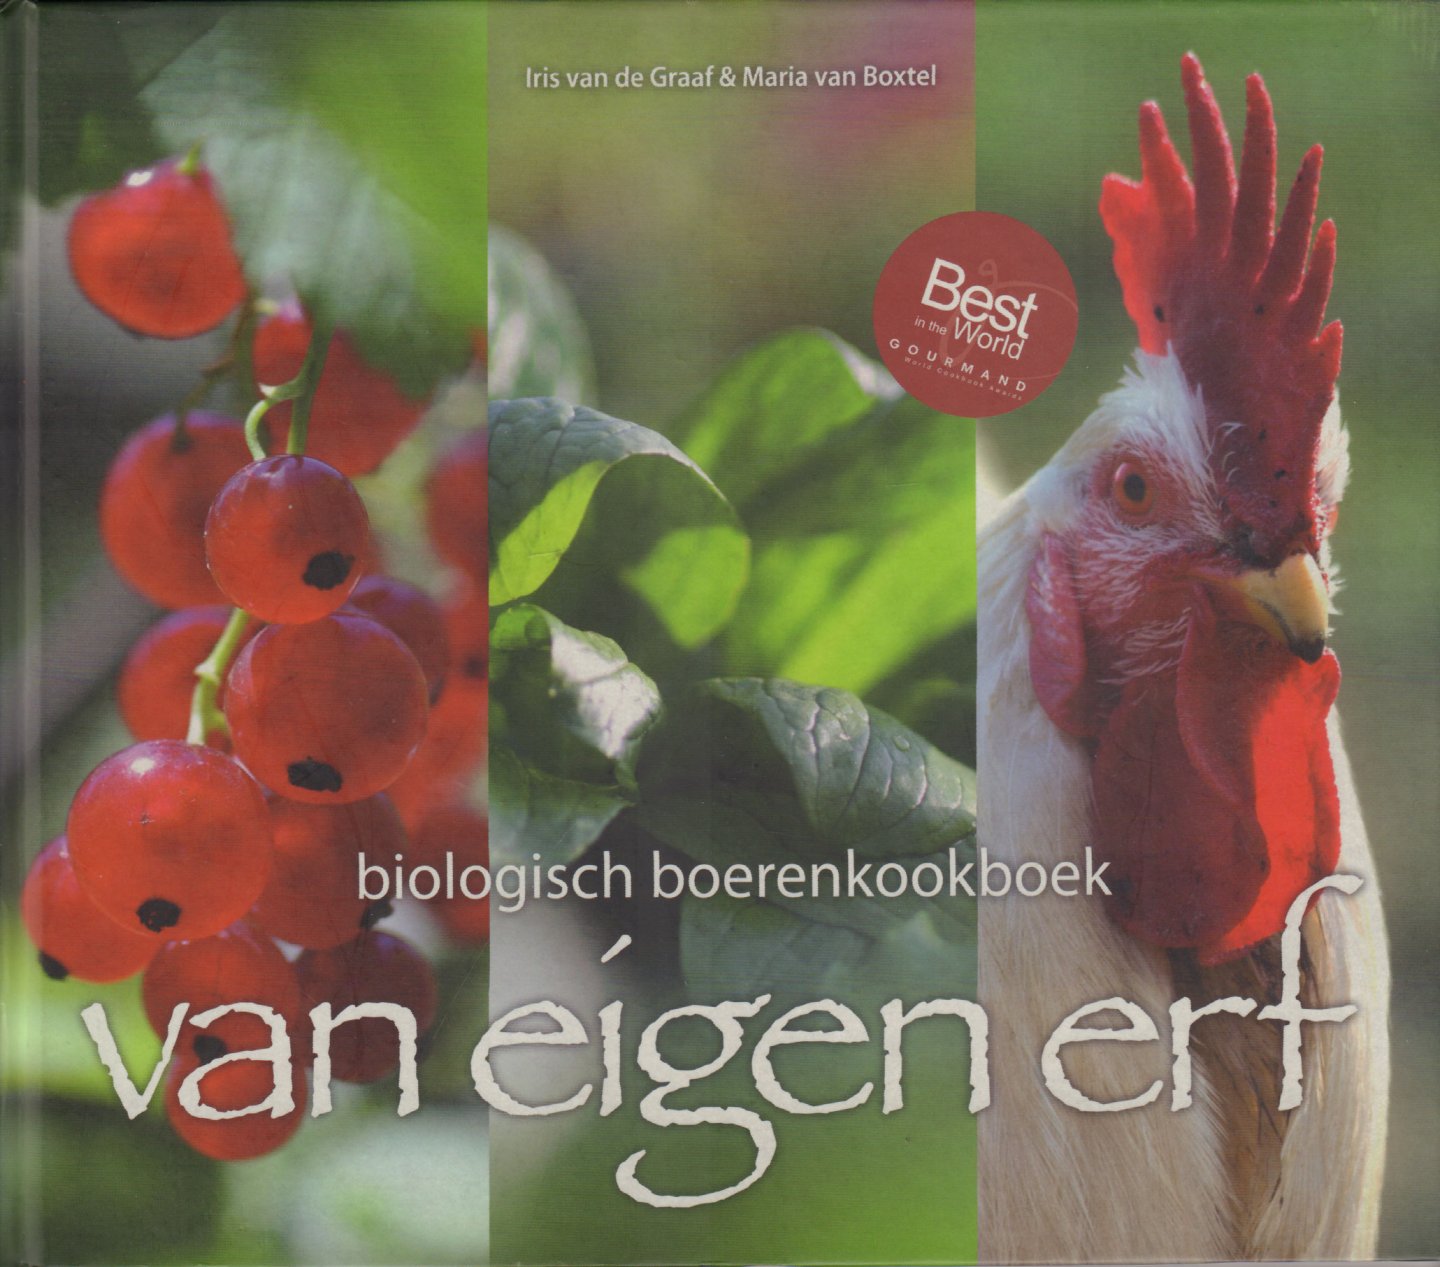 Graaf, Iris van de & Maria van Boxtel - Van Eigen Erf (Biologisch Boerenkookboek), 288 pag. hardcover, gave staat